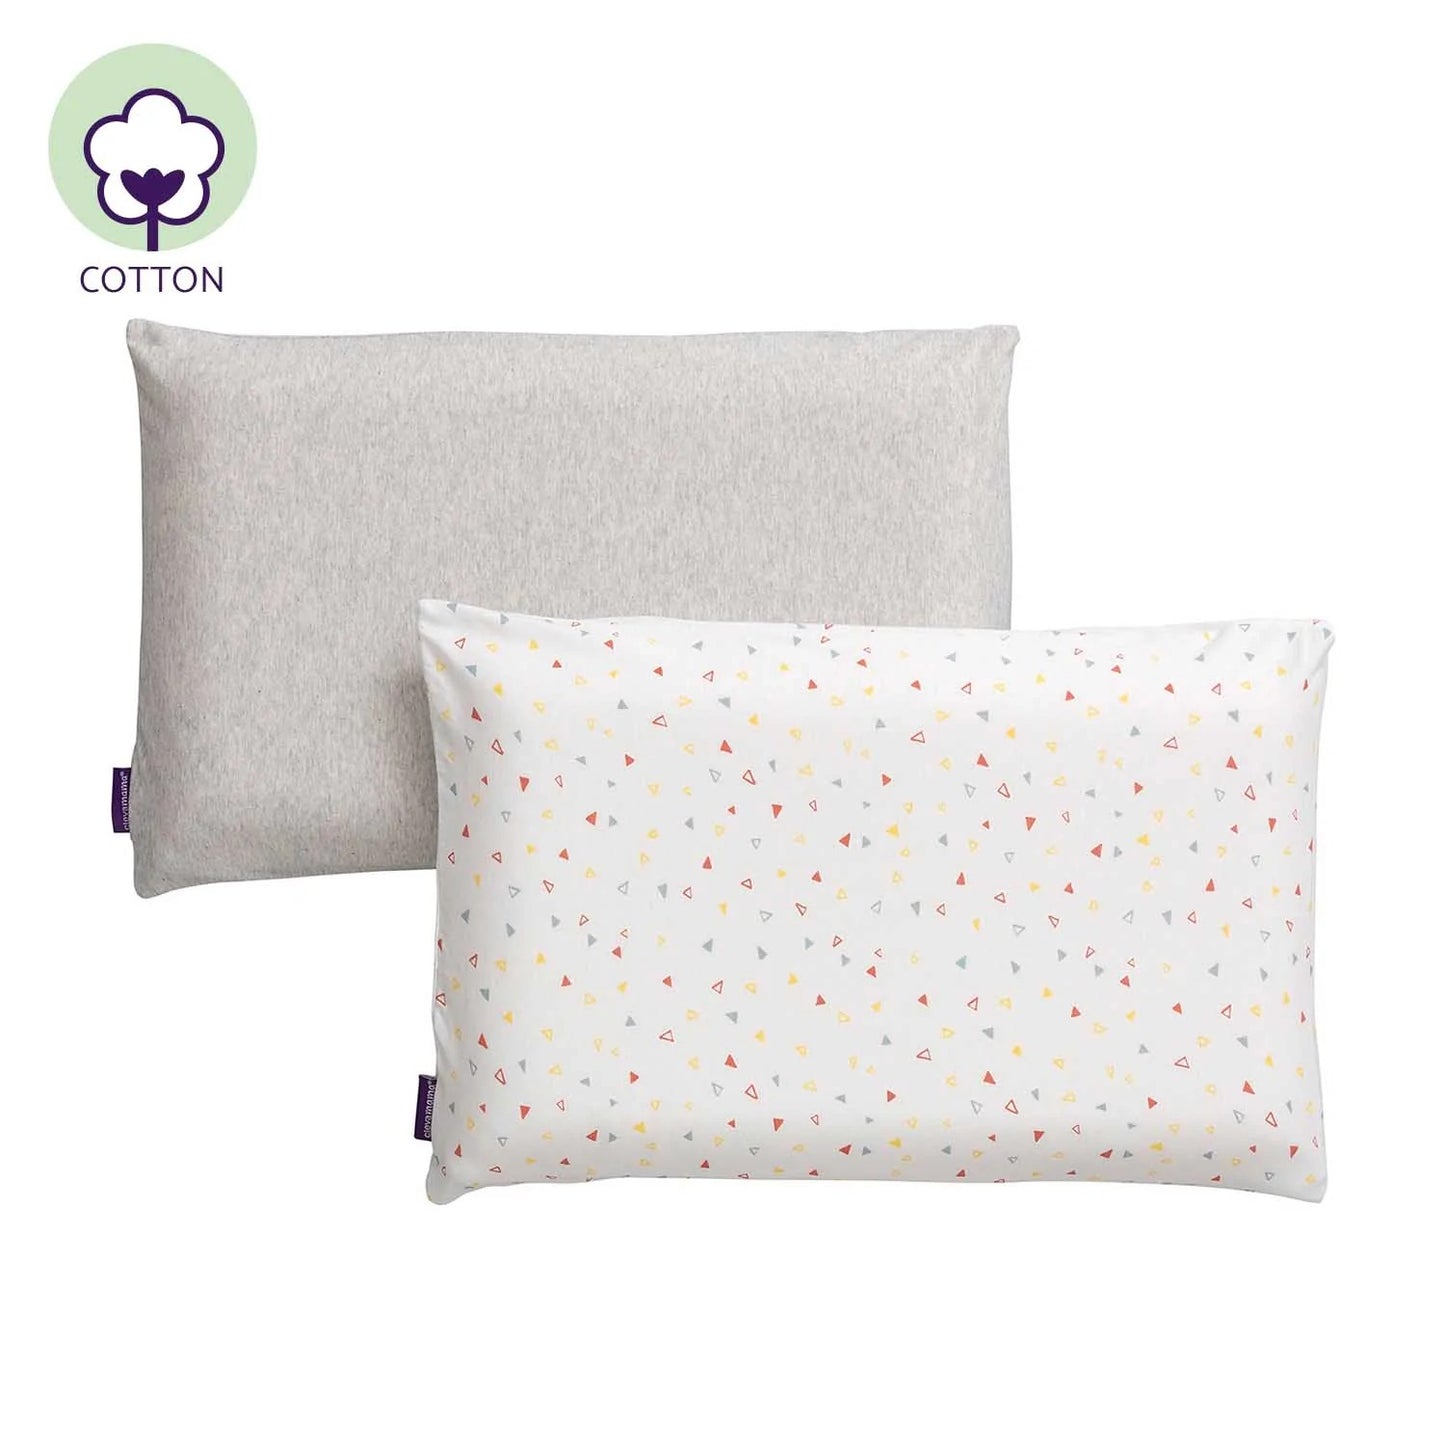 Cotton Toddler Pillow Case 2pk - Grey